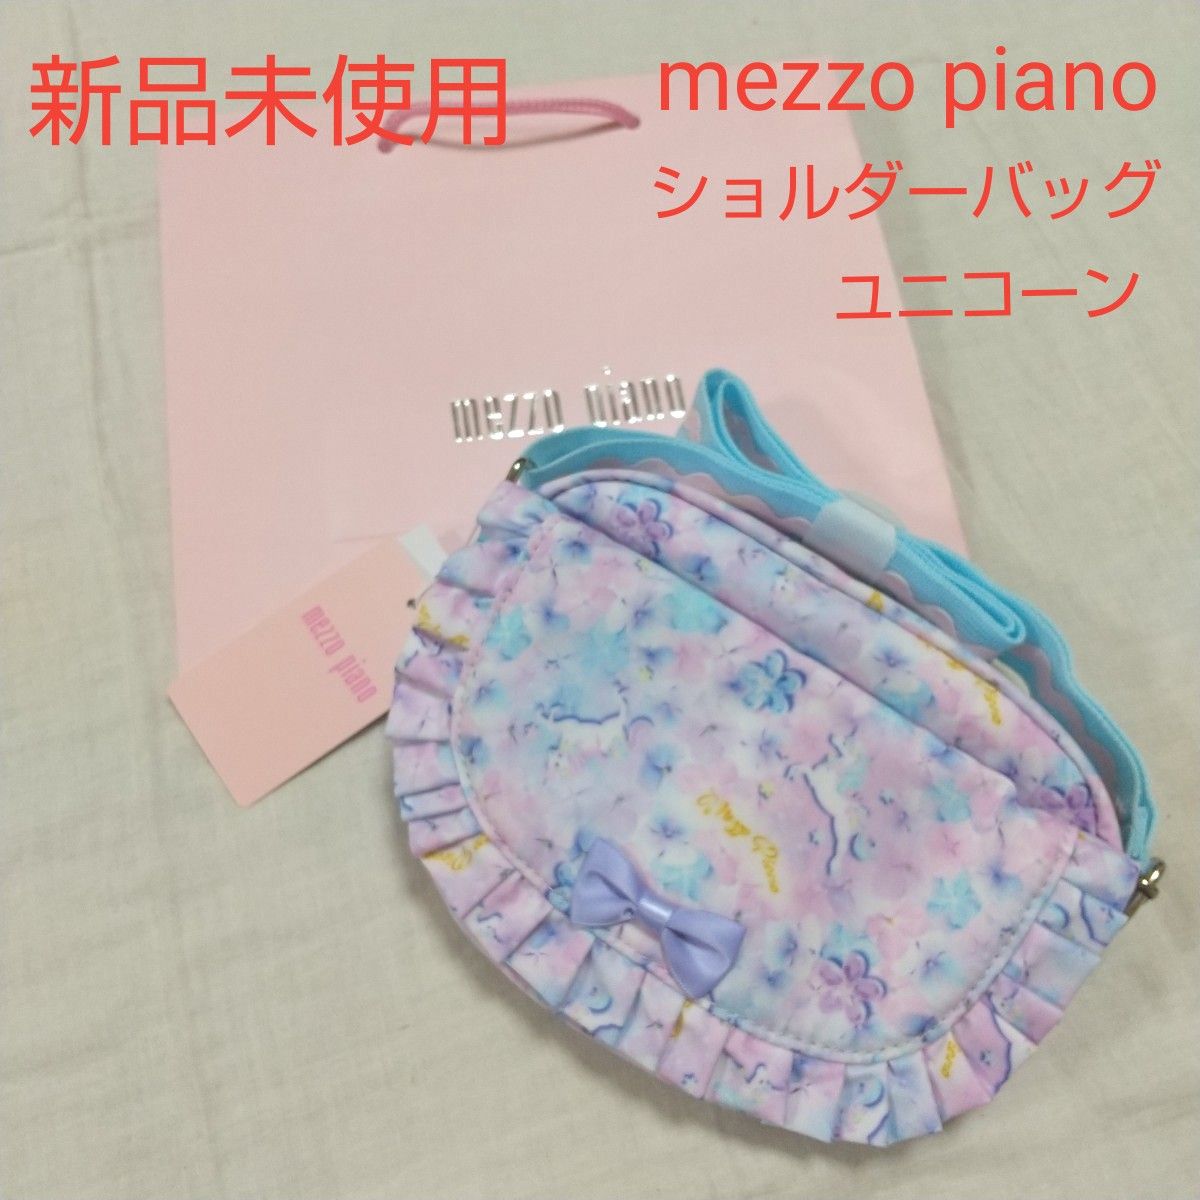 新品未使用 メゾピアノ mezzopiano ショルダーバッグ フラワー ユニコーン パープル 女の子 ポシェット